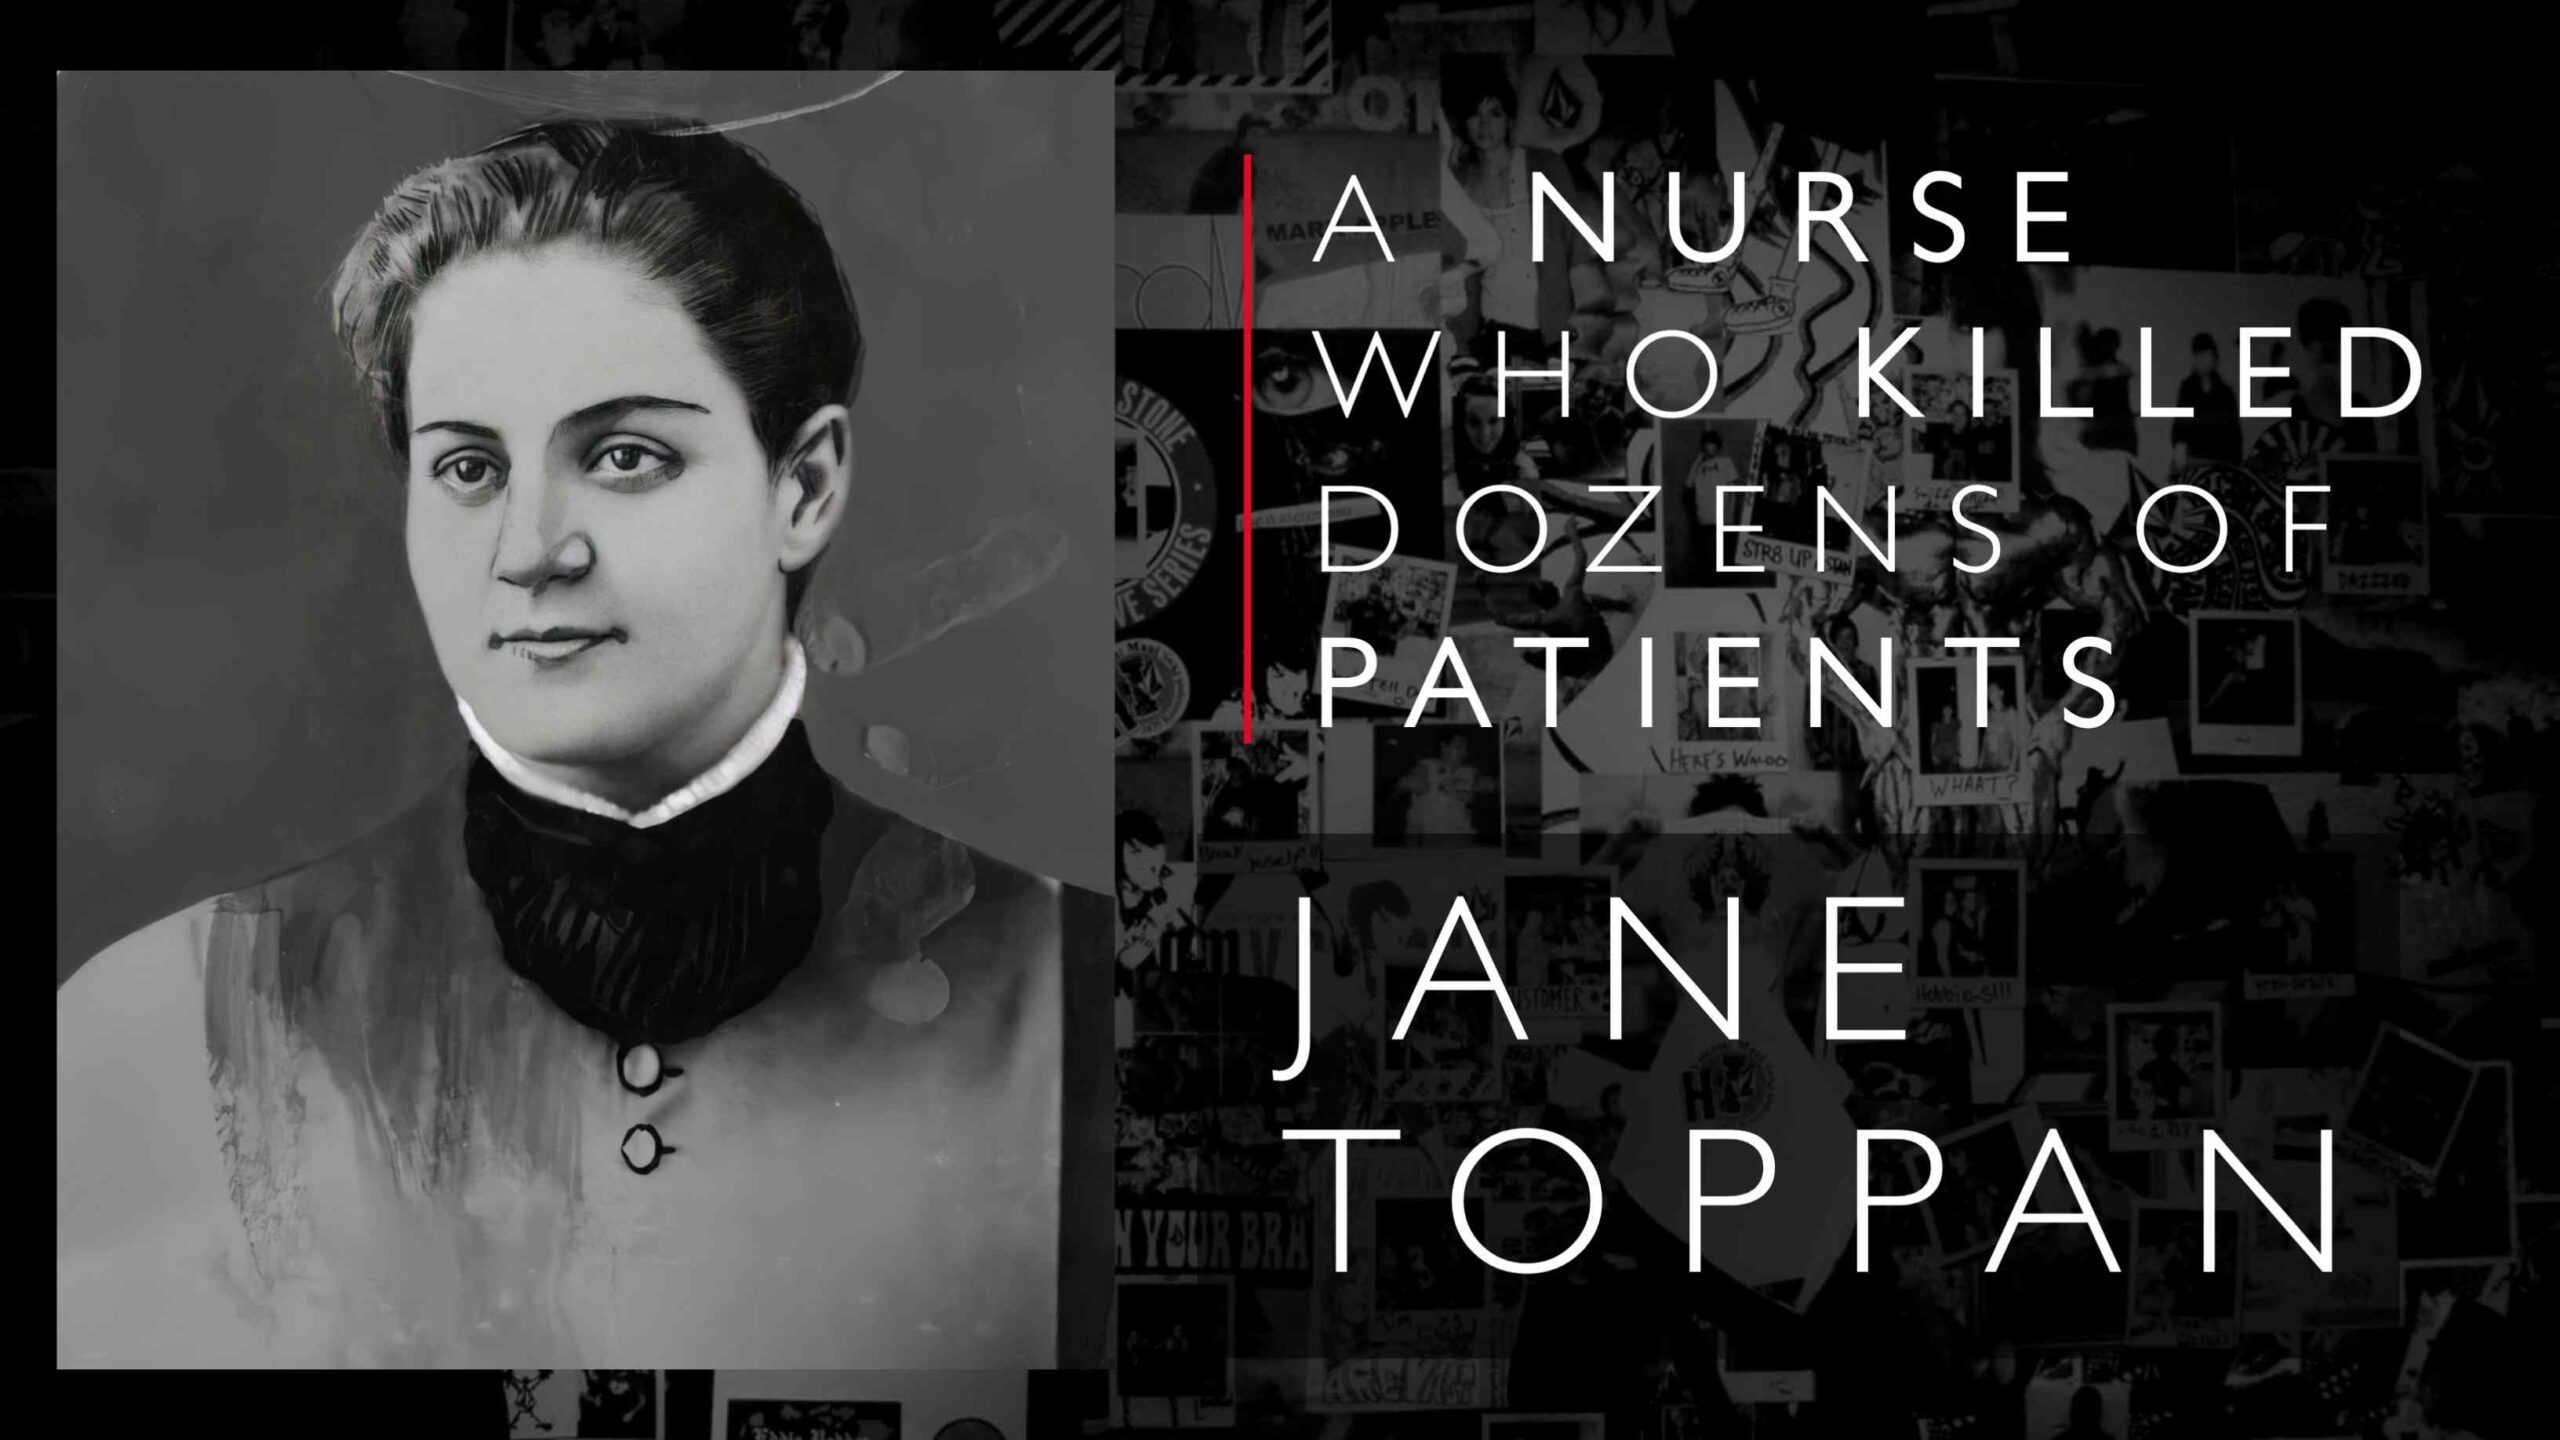 Jane Toppan (24 éves korában látták) nővér volt, aki 1885-ben kezdődött gyilkossági mulatságot folytatott betegekkel és barátokkal, és 30-ig 1901 áldozatot követelt.